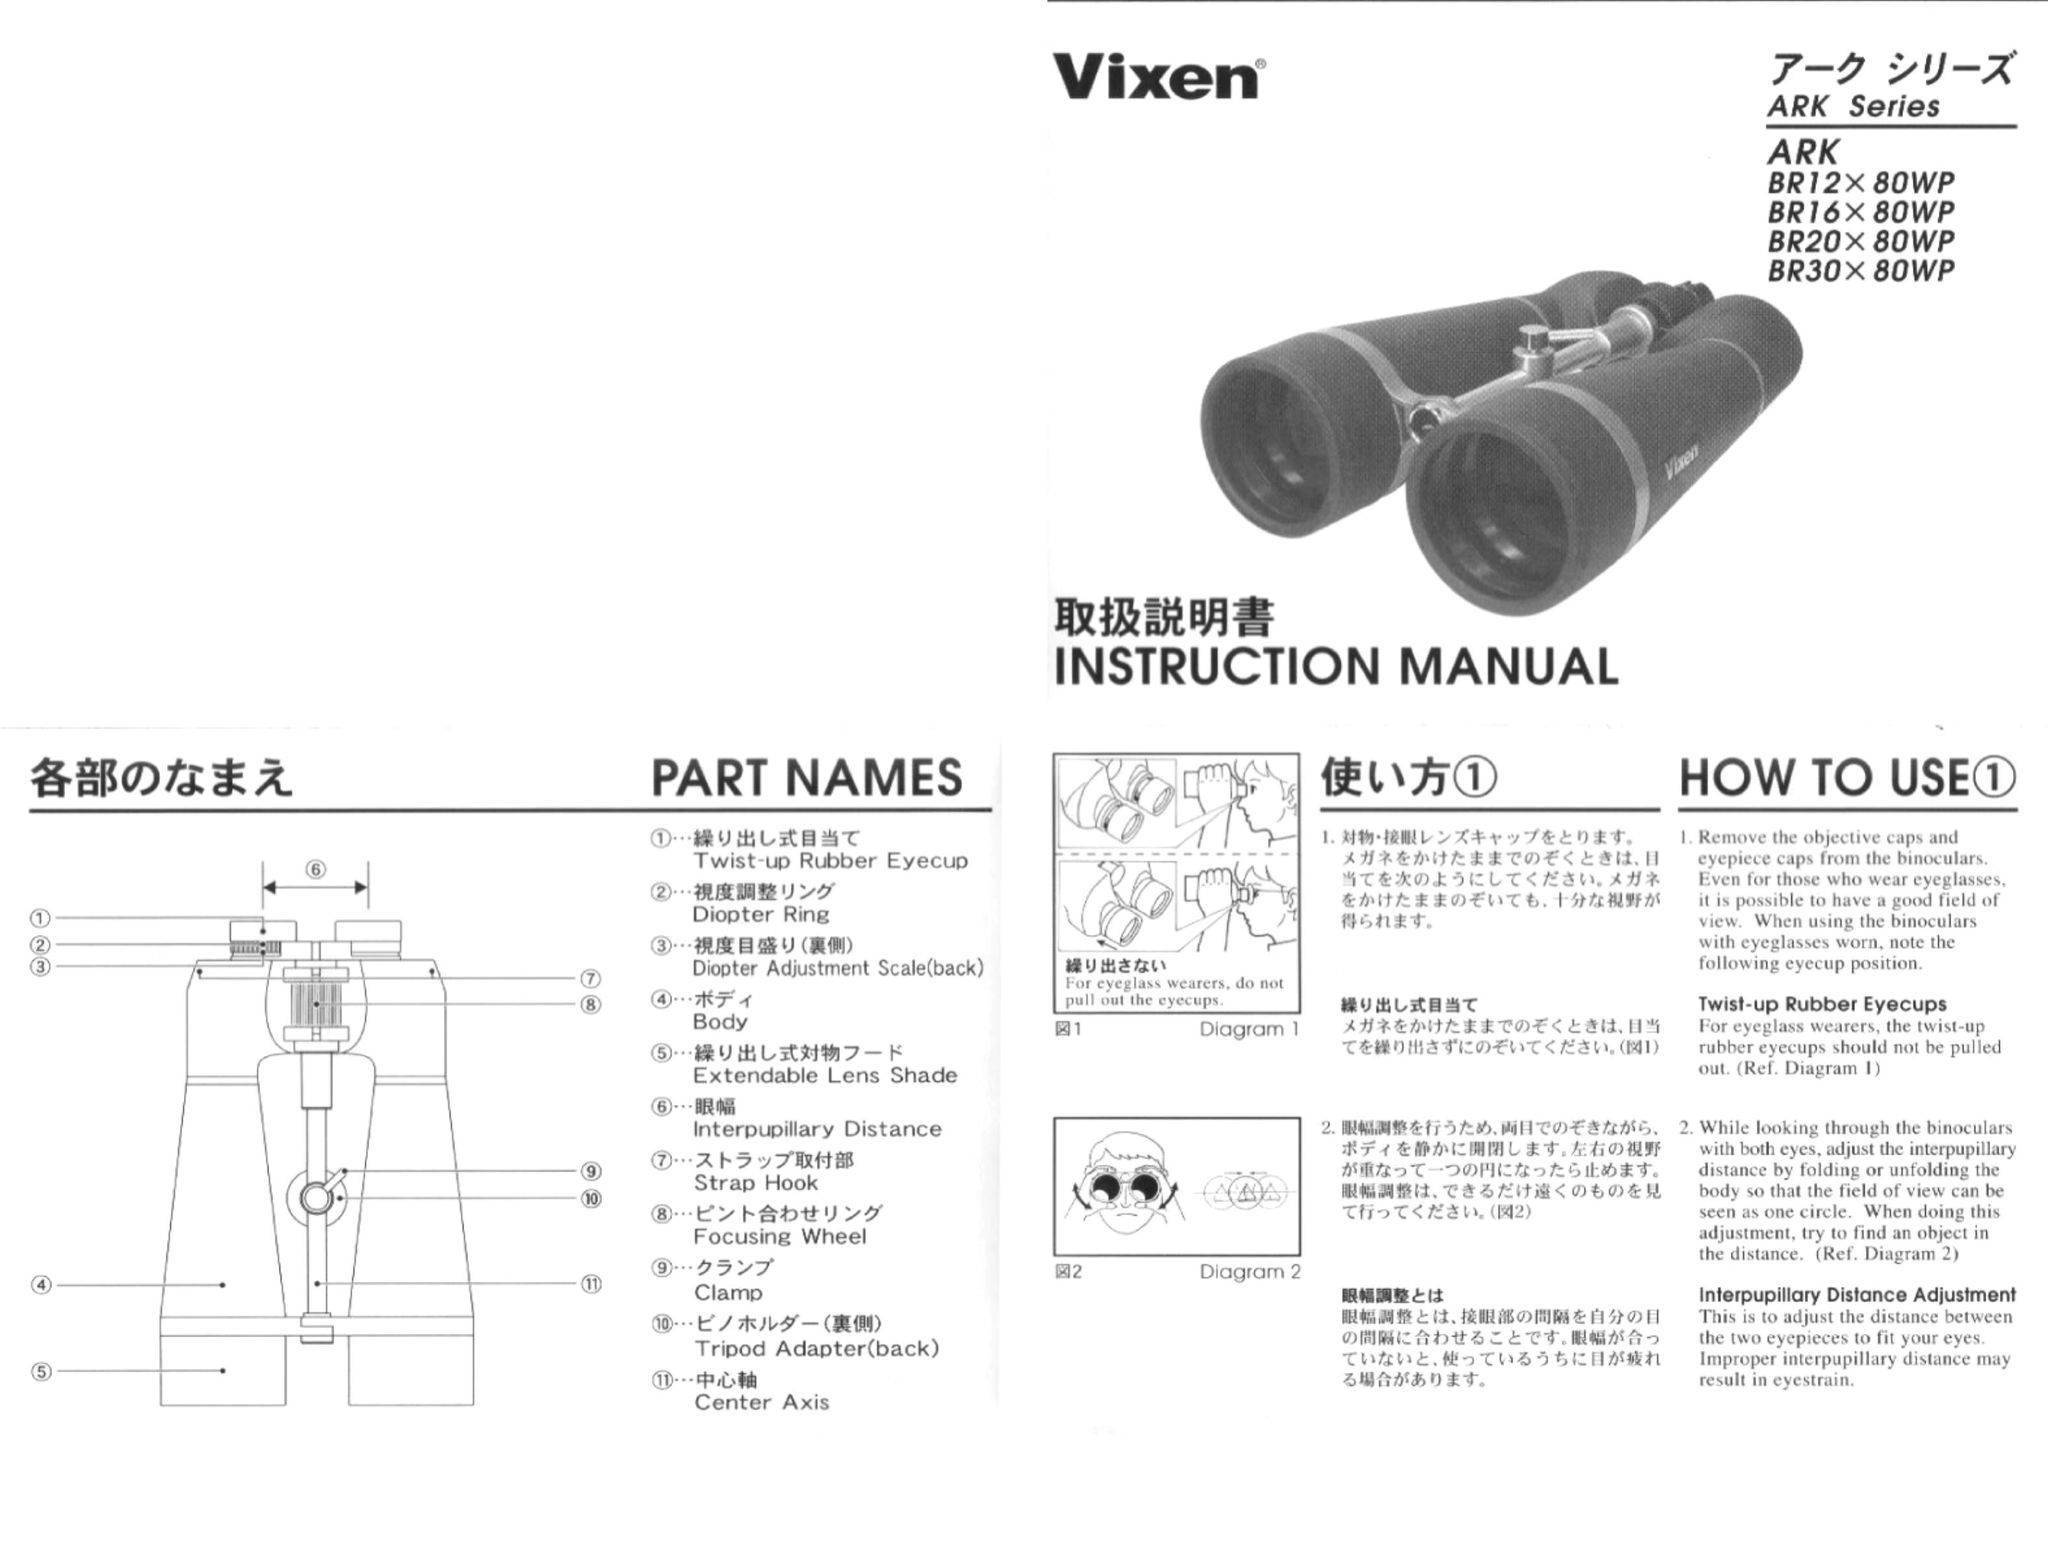 Vixen ARK Series Binoculars User Manual